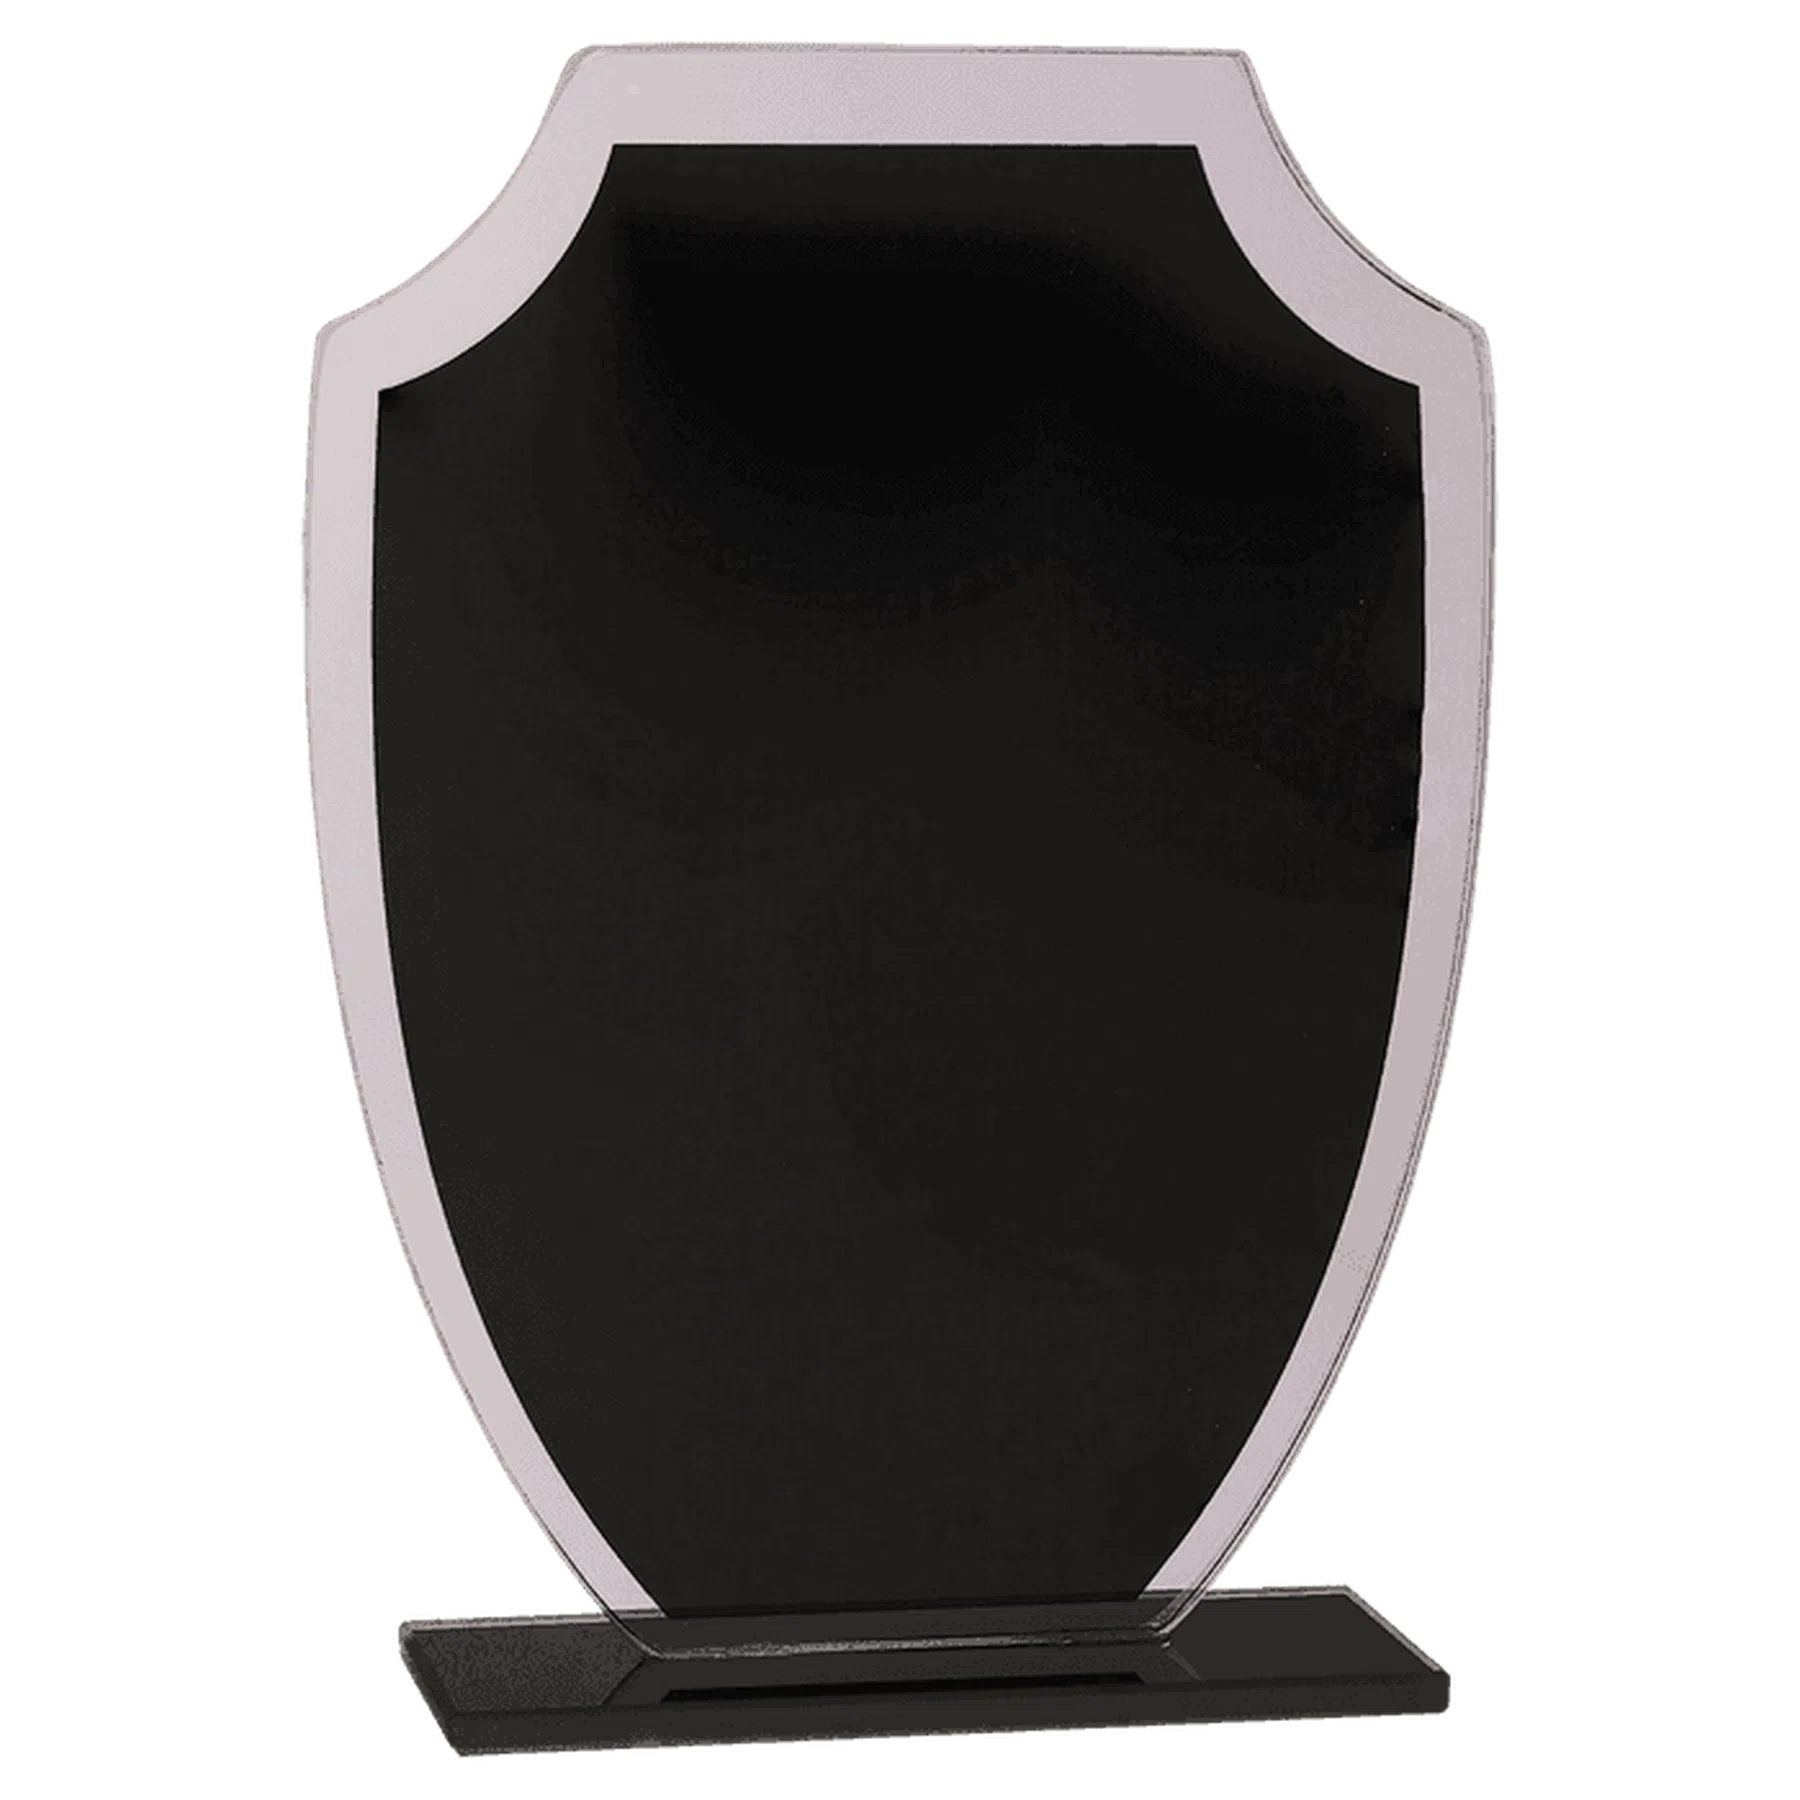 Shield Reflection Glass Award